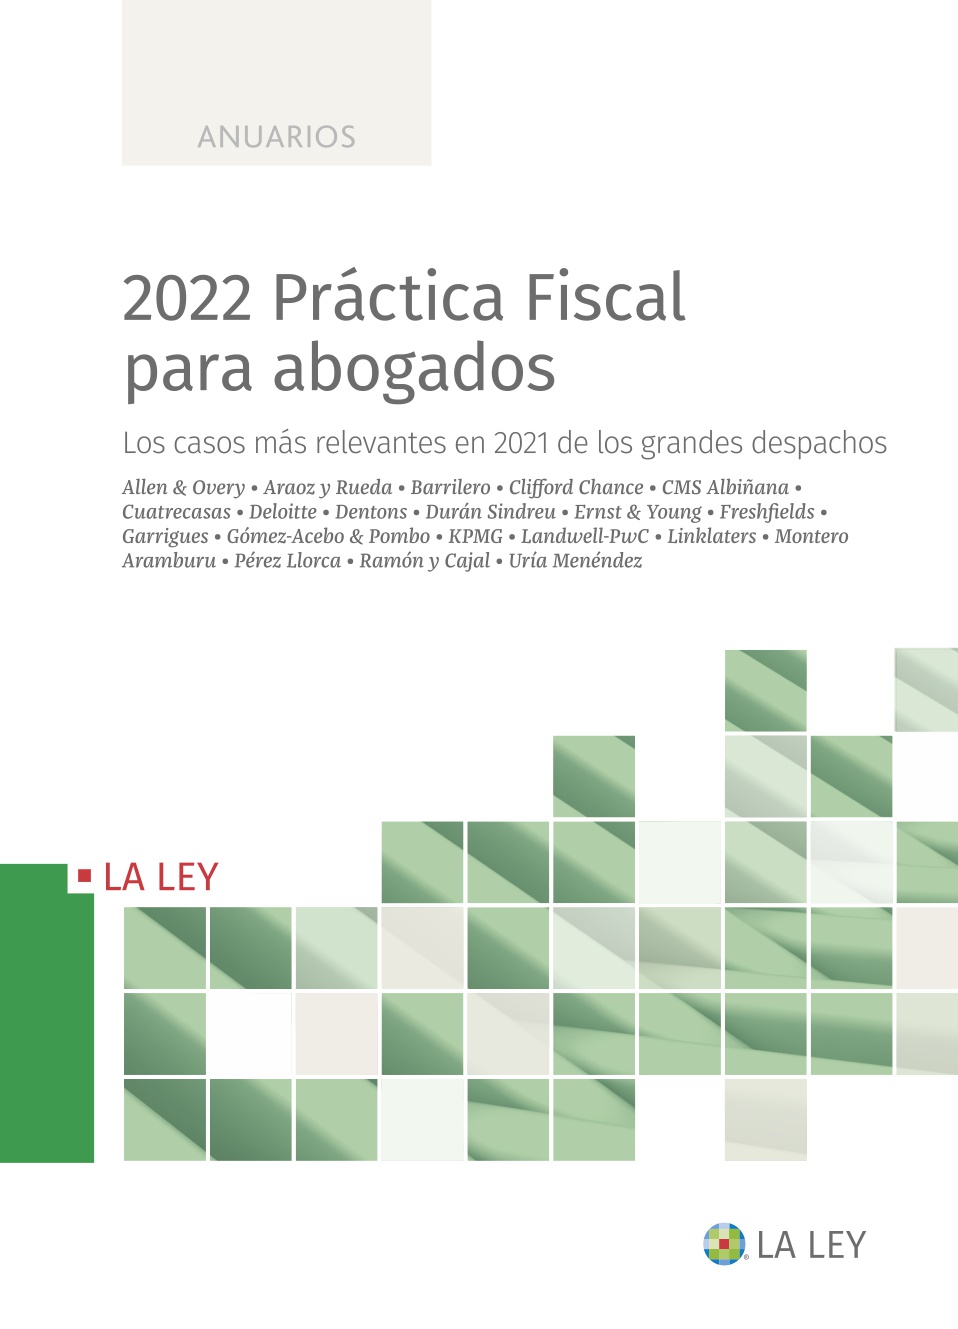 2022 Práctica Fiscal para abogados   «Los casos más relevantes sobre litigación y arbitraje en 2021 de los grandes despachos»